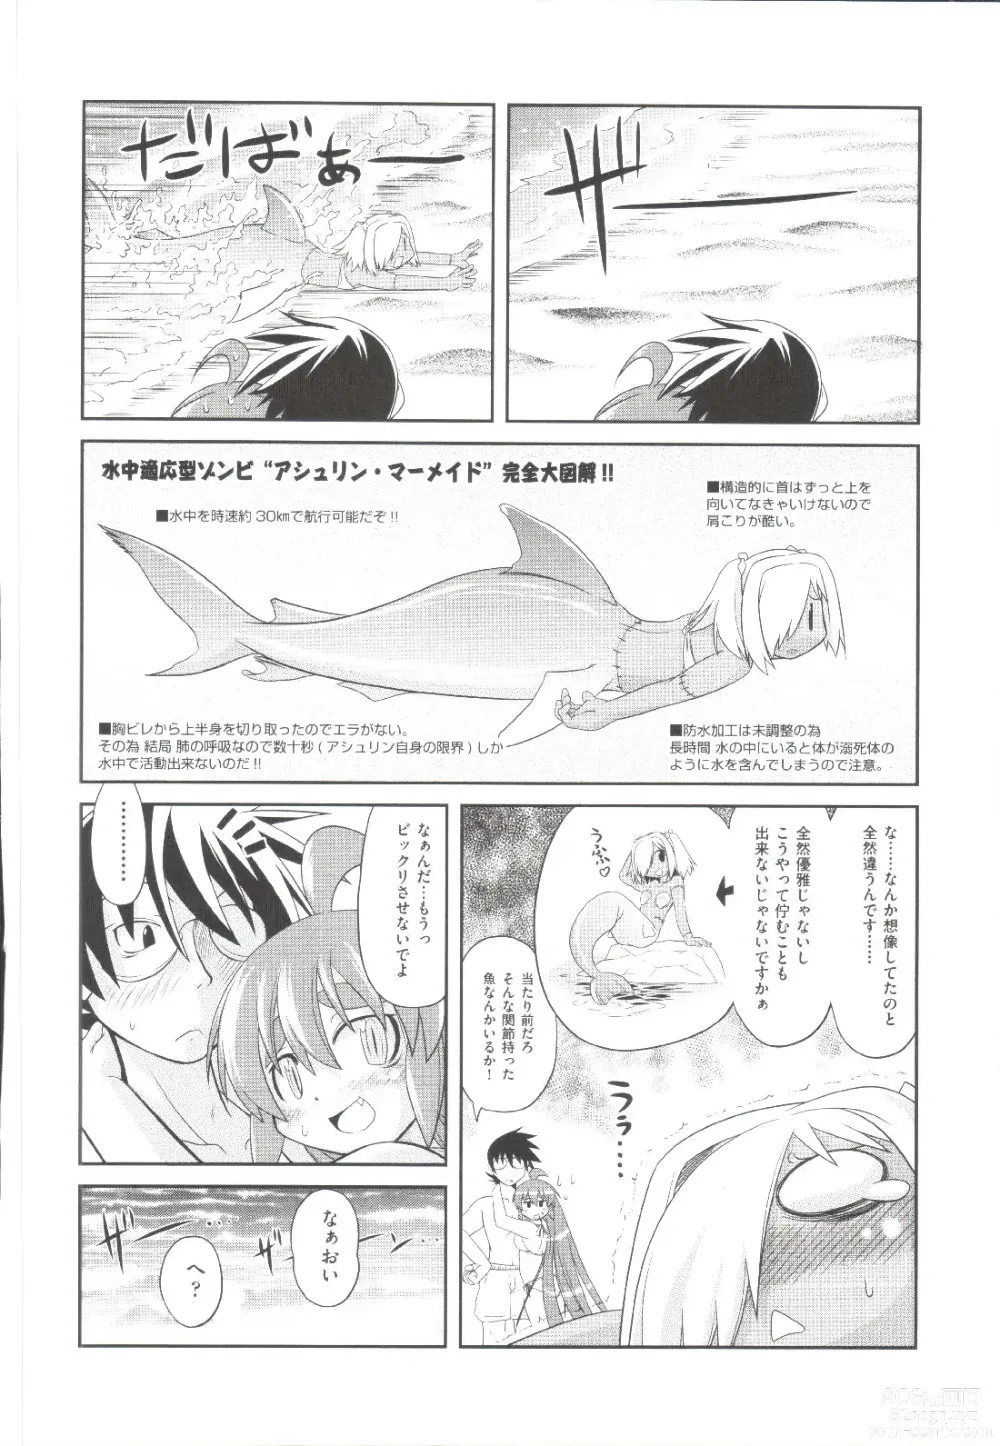 Page 205 of manga Takuramakan Doubutsuen-Taklamakan Zoo